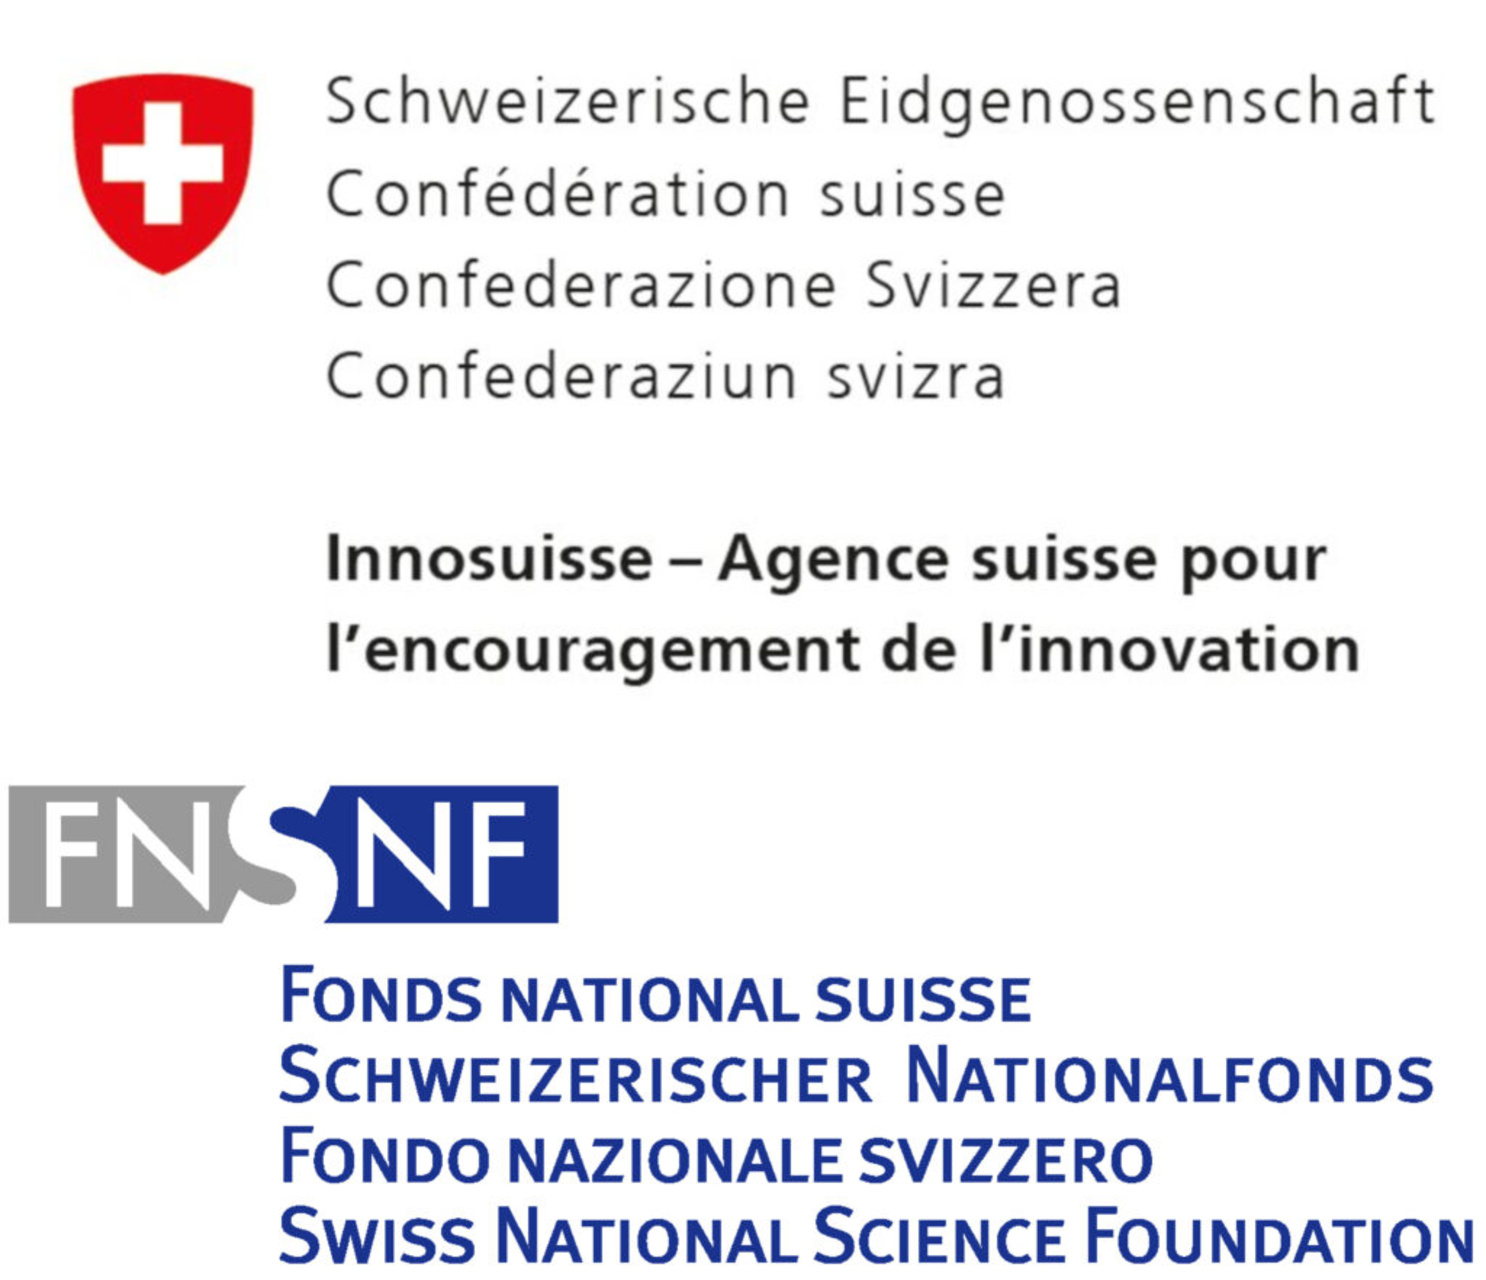 Obrazovanje, istraživanje i inovacije: poruka Parlamentu Saveznog vijeća za promociju ERI sektora u četverogodišnjem periodu 2025-2028 i za rukovodstvo Švicarske